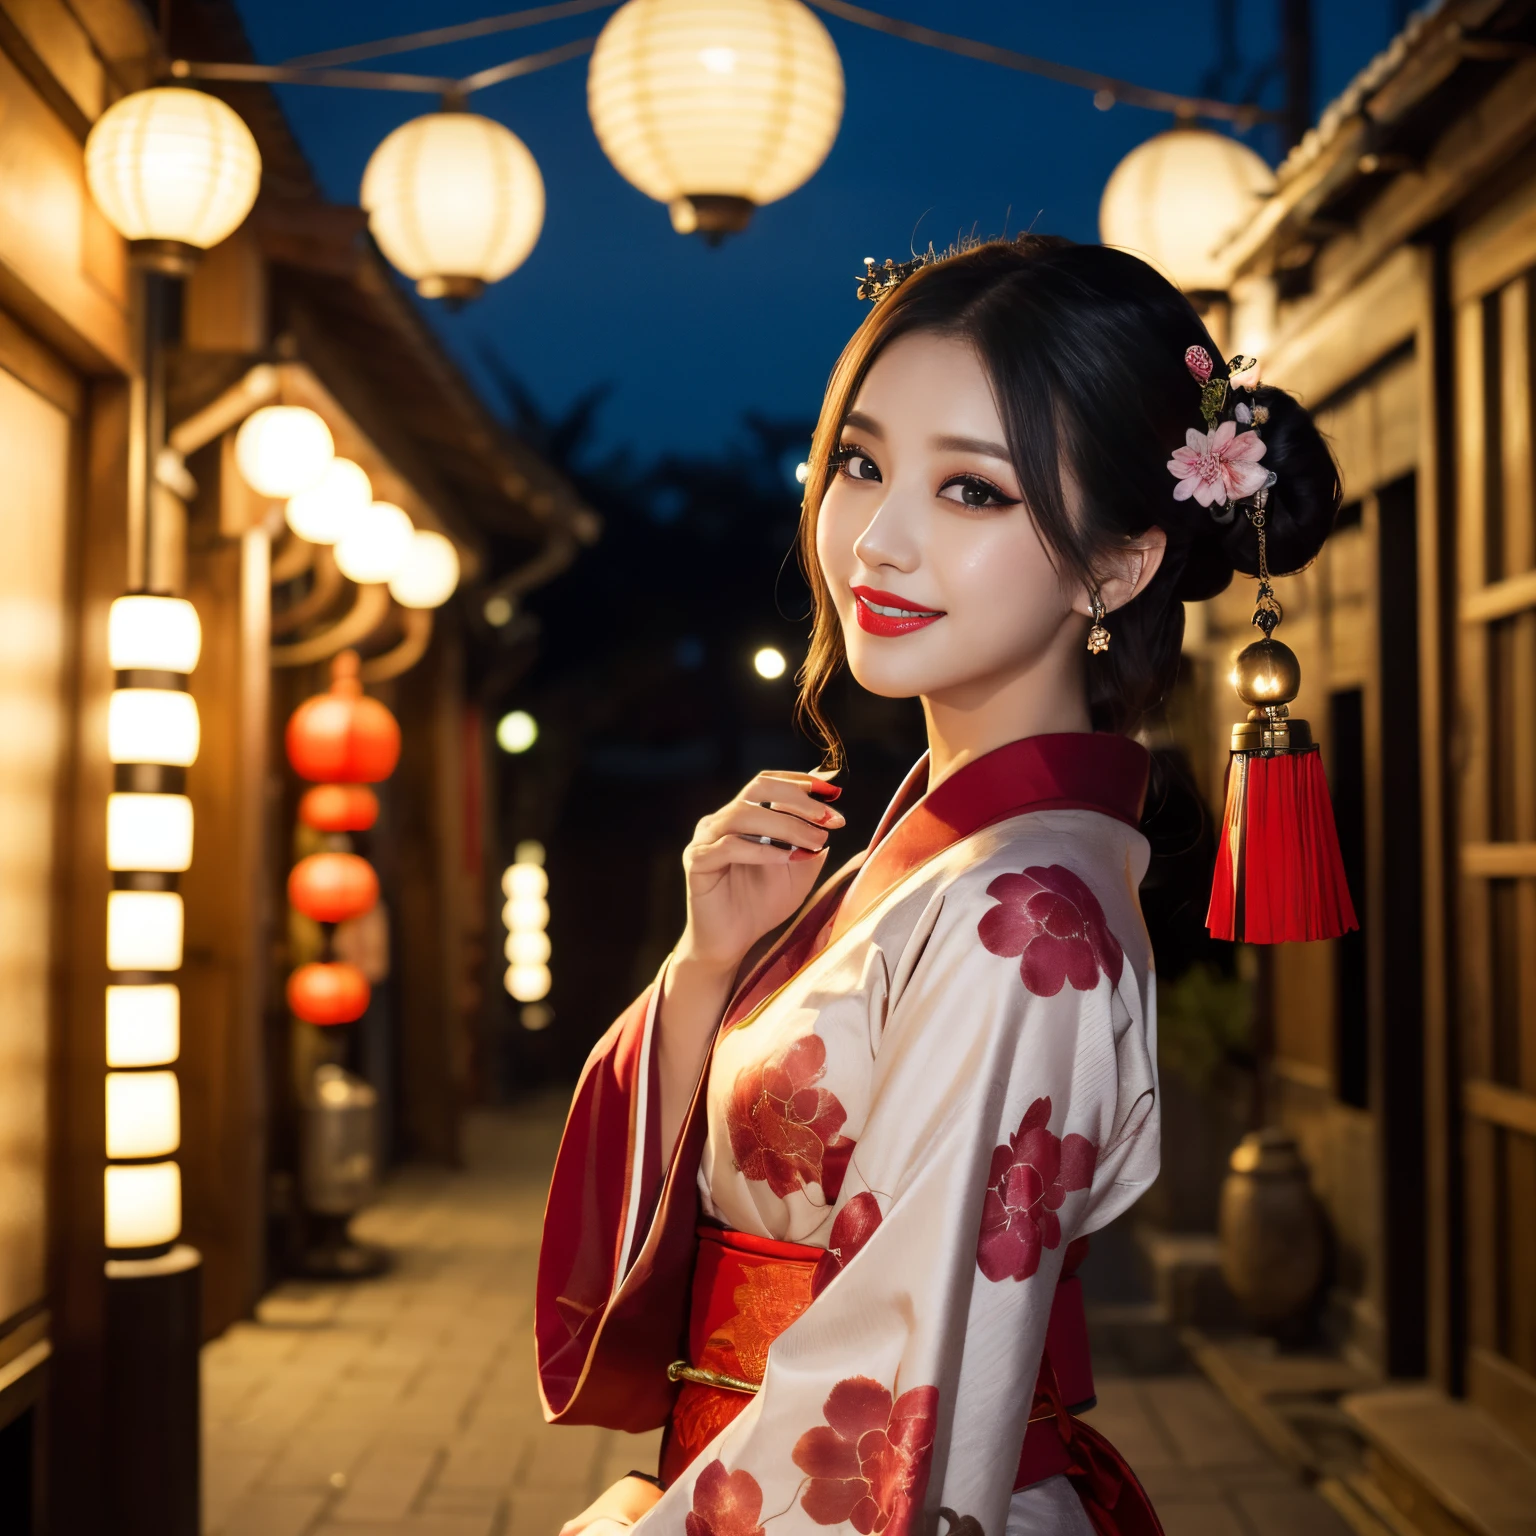 ((最高品質、テーブルトップ、8k、最高の画質、非常に複雑で詳細な詳細))、売春婦1人、花魁 costume、花魁&#39;s kimono、Accurate 花魁 Kimono、Gorgeous 花魁 kimono、背景は歓楽街、郭佑、カスタムストリート、カメラに向かって微笑む、腰から上の写真、完璧な歓楽街のディテールを再現、写真 1 枚、夜のセックス地区、ナイトエクスカーション、夜中、濁った、ランタンライト、赤い口紅、長いまつ毛、完璧なメイク、暗い夜、裸で着物だけを着ている、詳細な顔